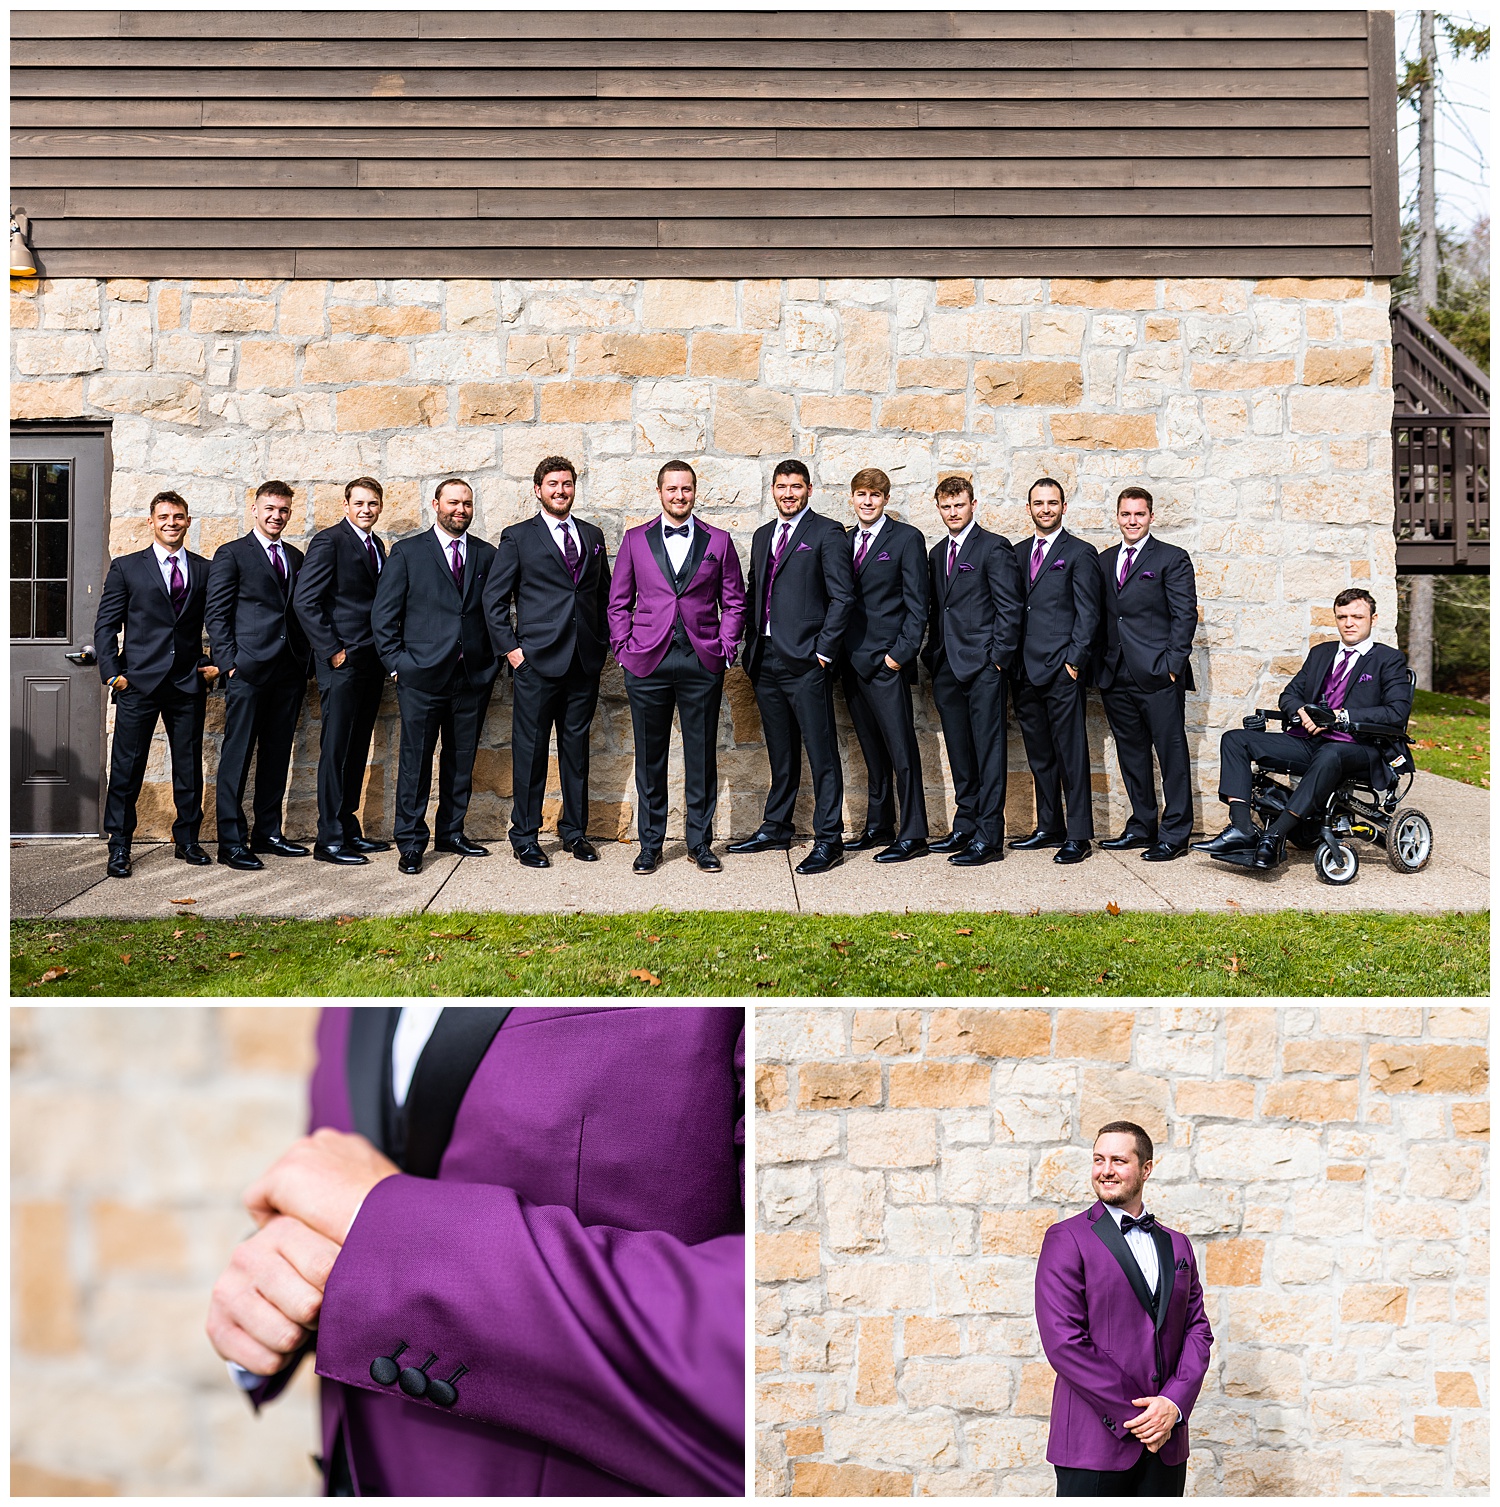 Groom in purple tux jacket posing with groomsmen